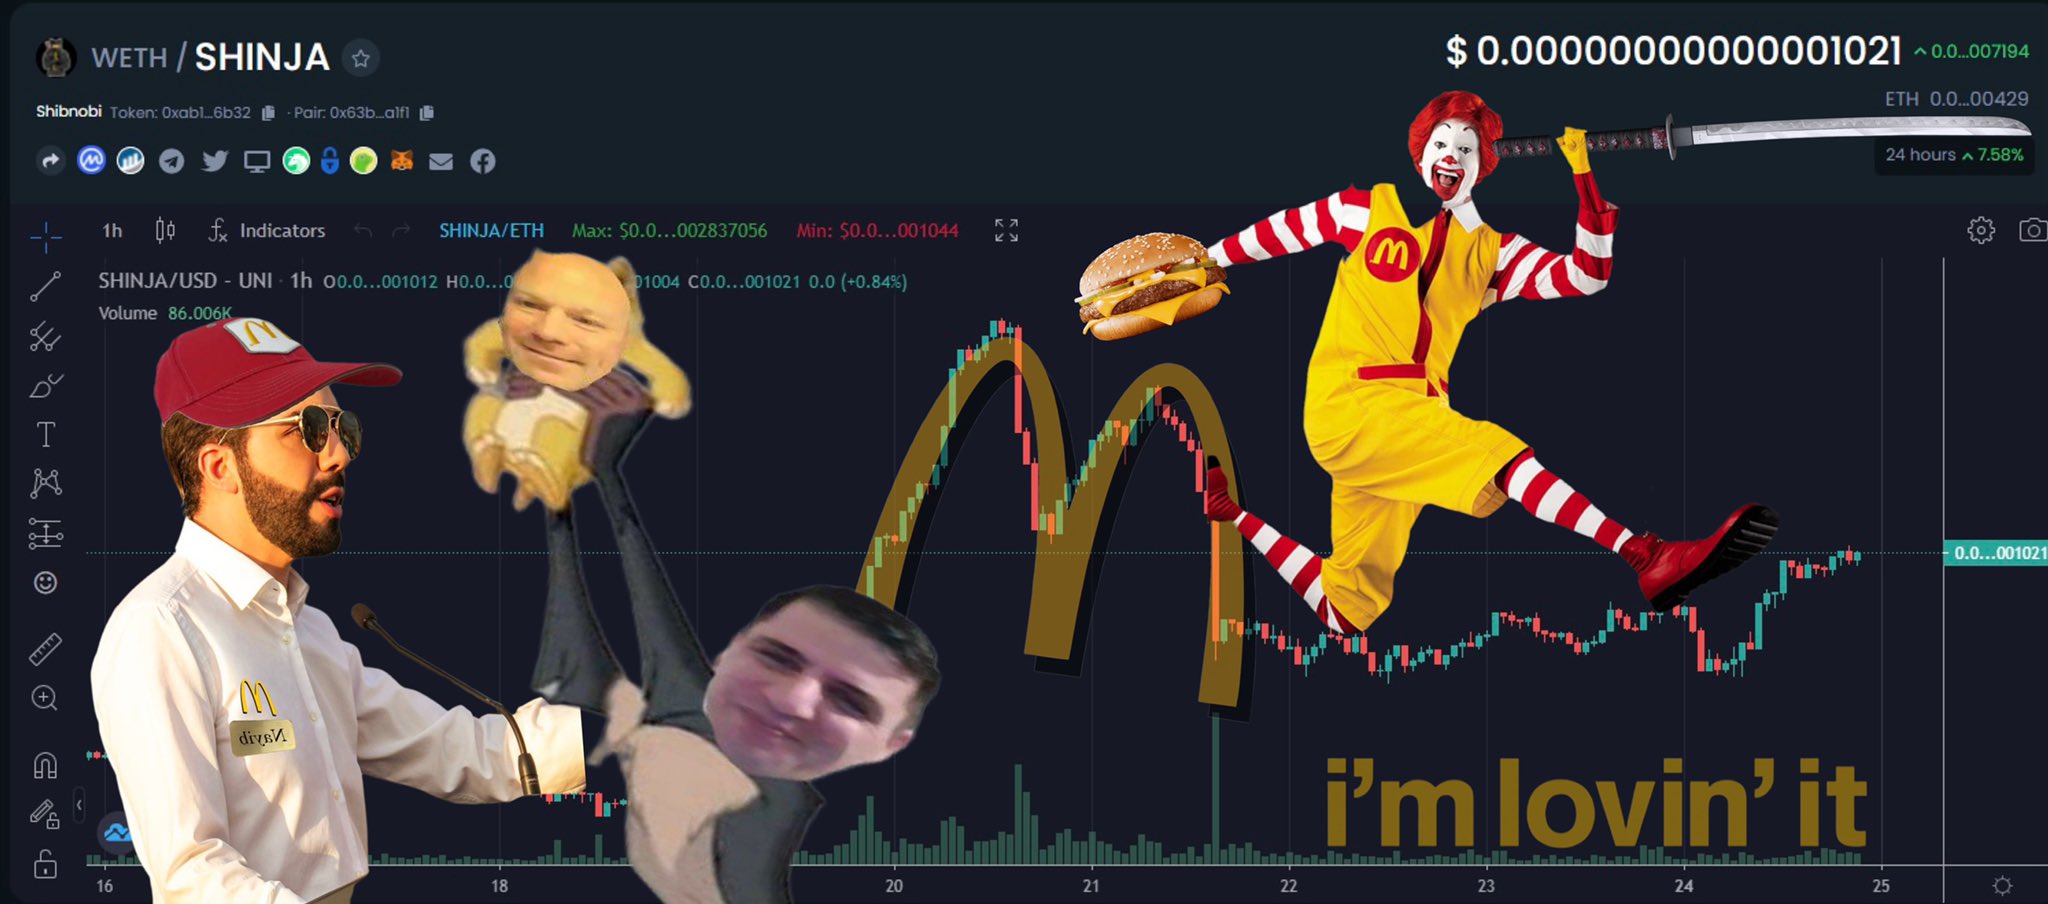 Πανδαιμόνιο στο Twitter με κάτοχους κρυπτονομισμάτων να παρομοιάζουν το γράφημα της πορείας της αγοράς με το σήμα των McDonald’s © twitter.com/DanielMoncada80/